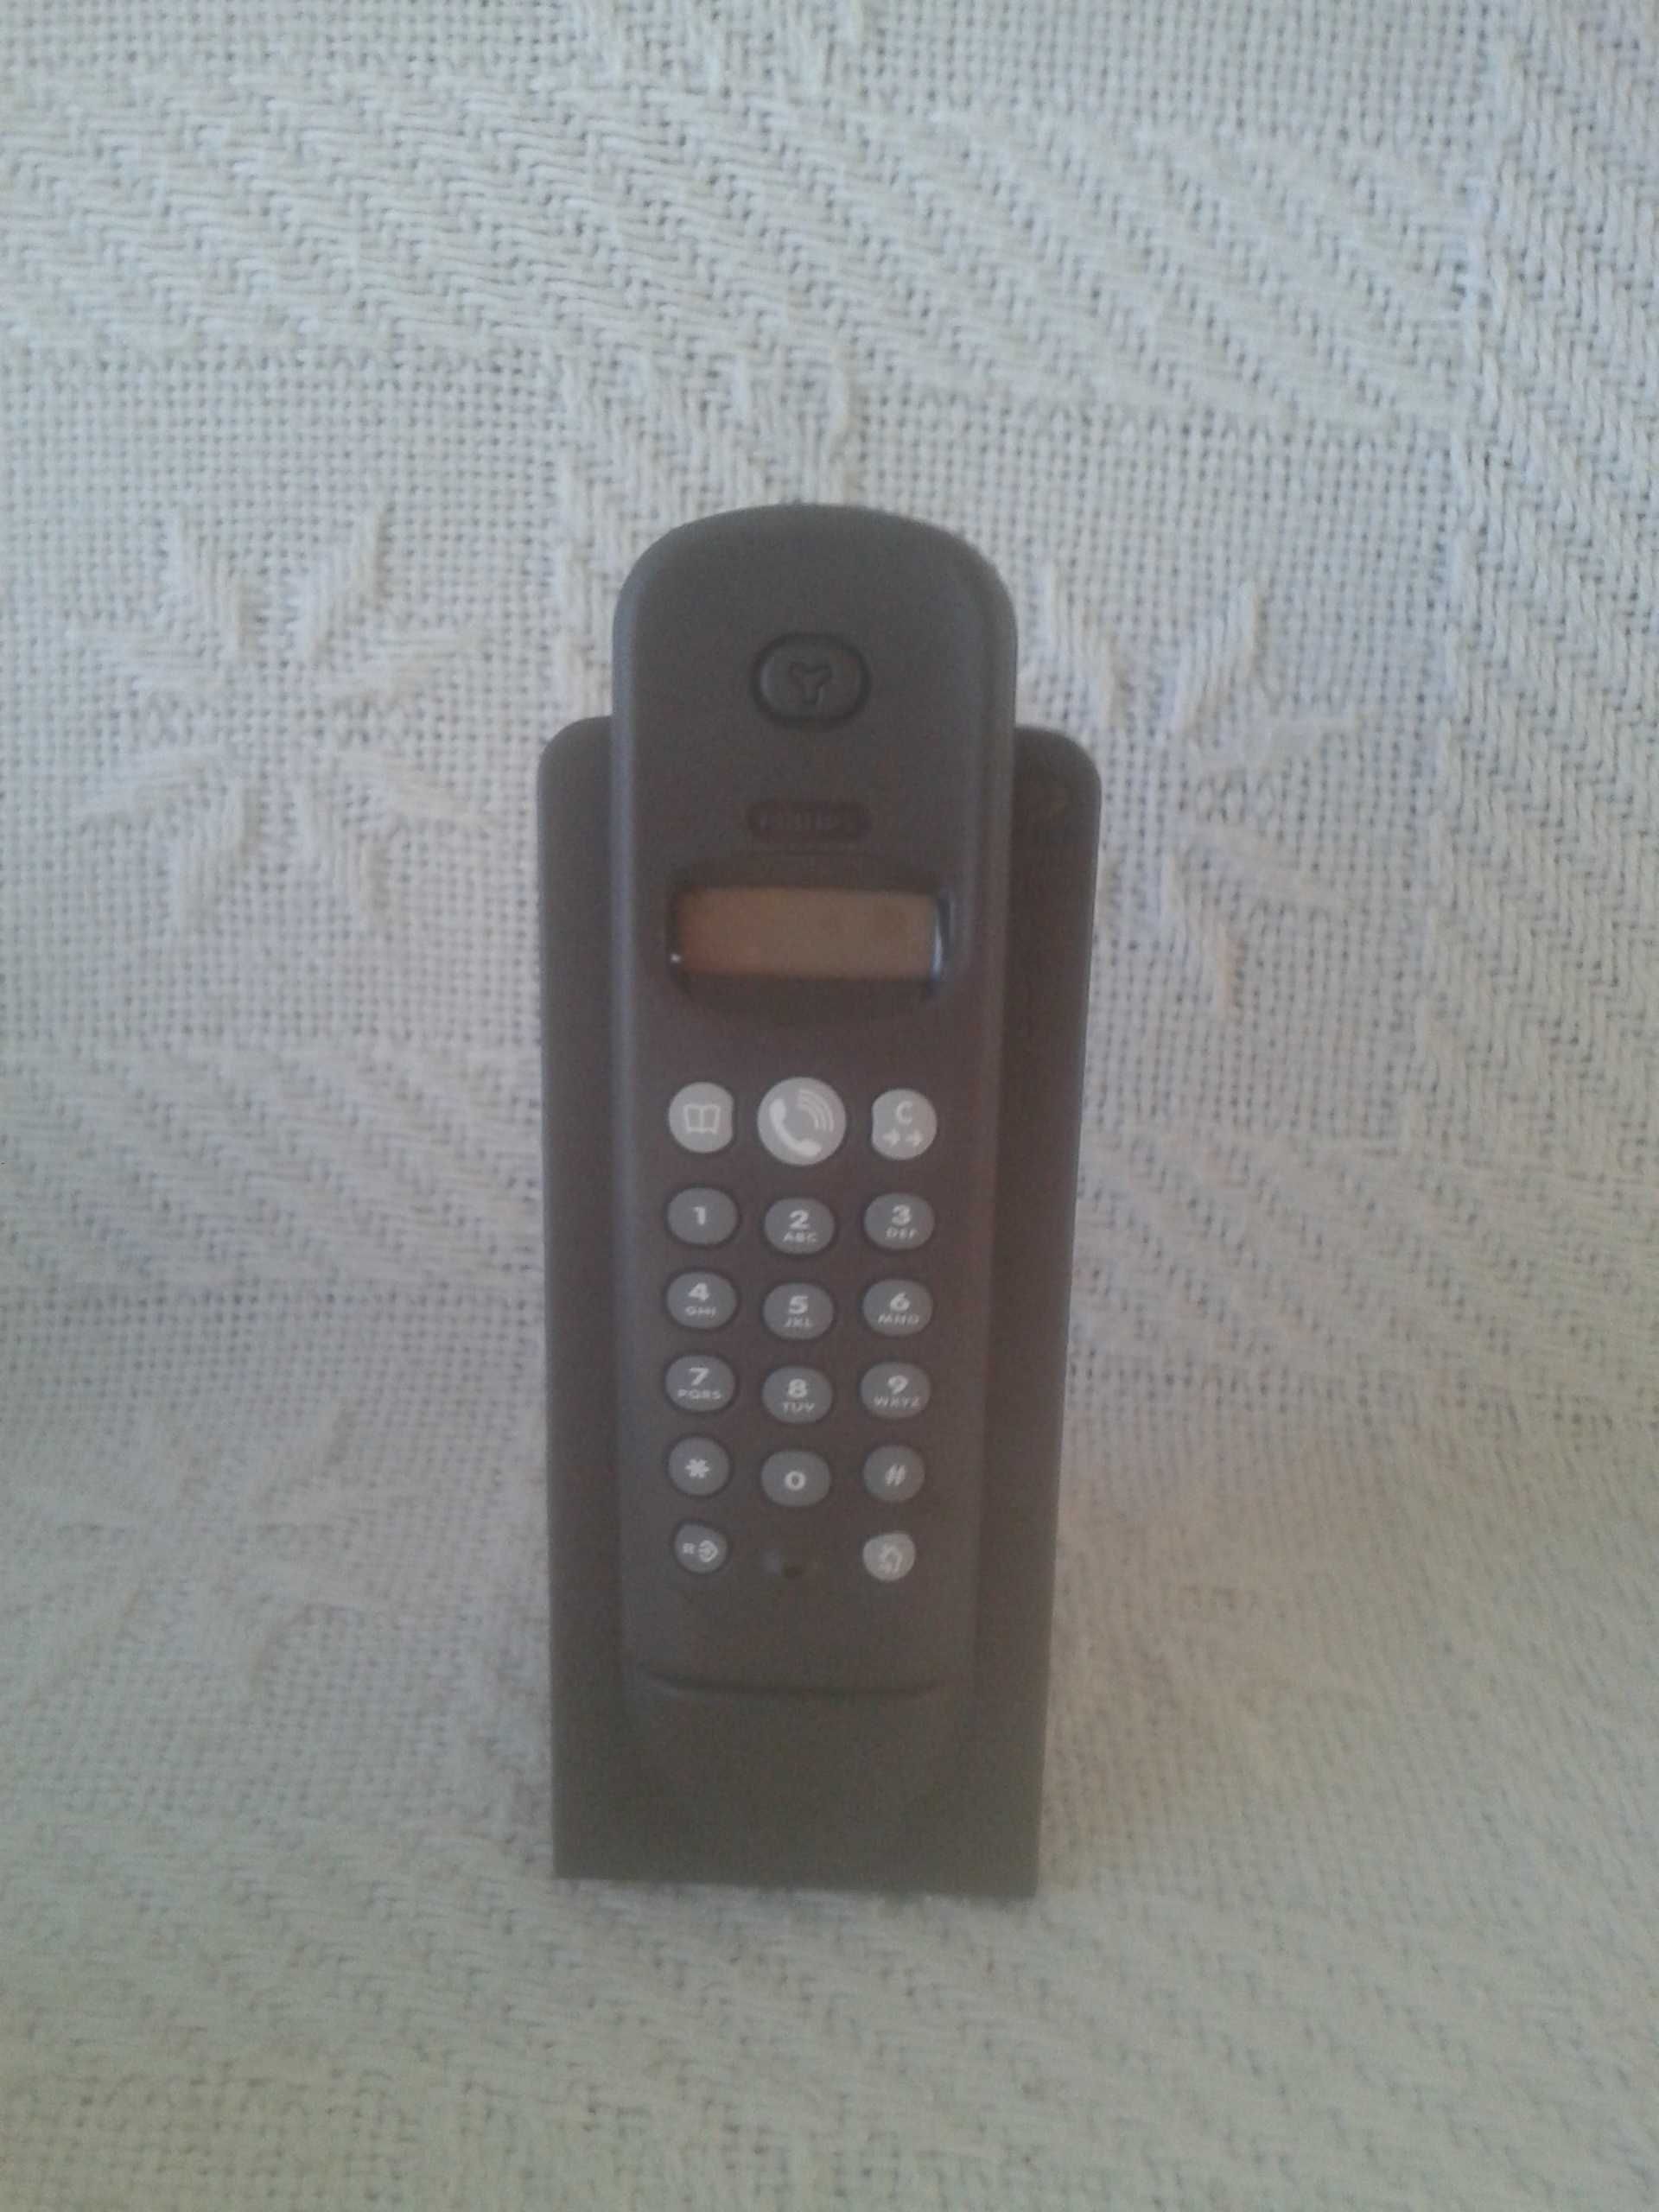 Nowy telefon bezprzewodowy firmy Philips Xalio 200